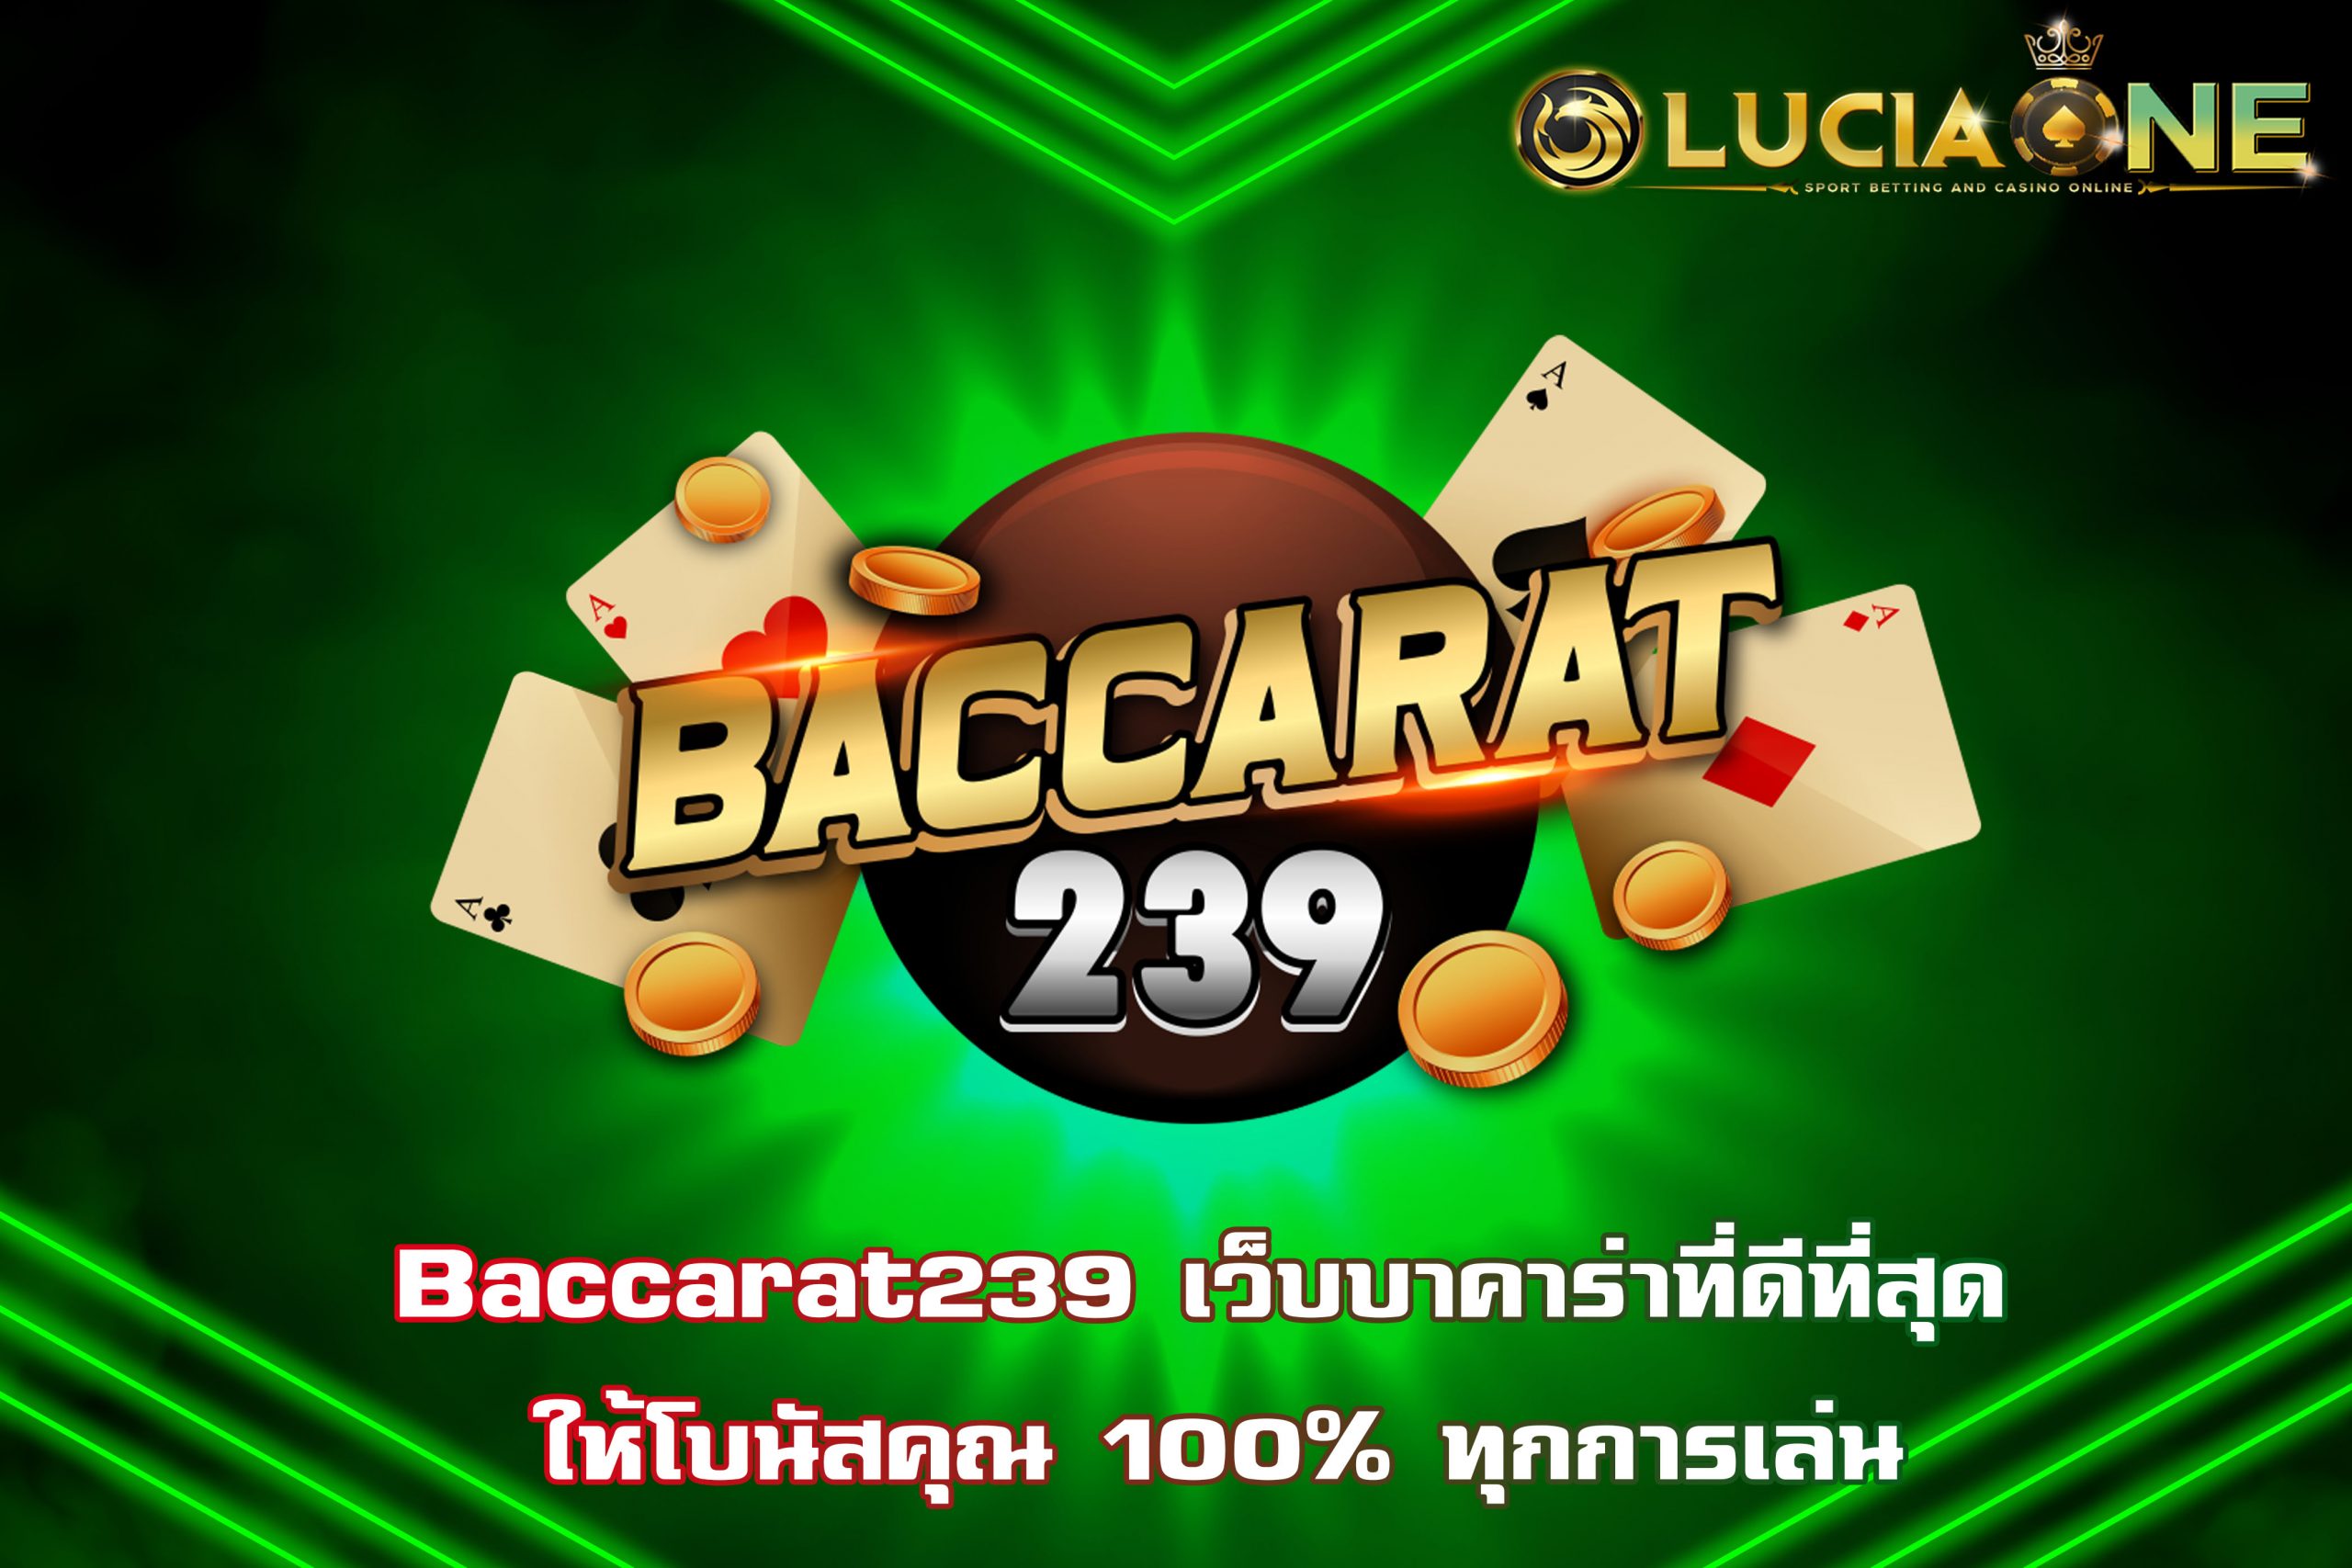 Baccarat239 เว็บบาคาร่าที่ดีที่สุด ให้โบนัสคุณ 100% ทุกการเล่น